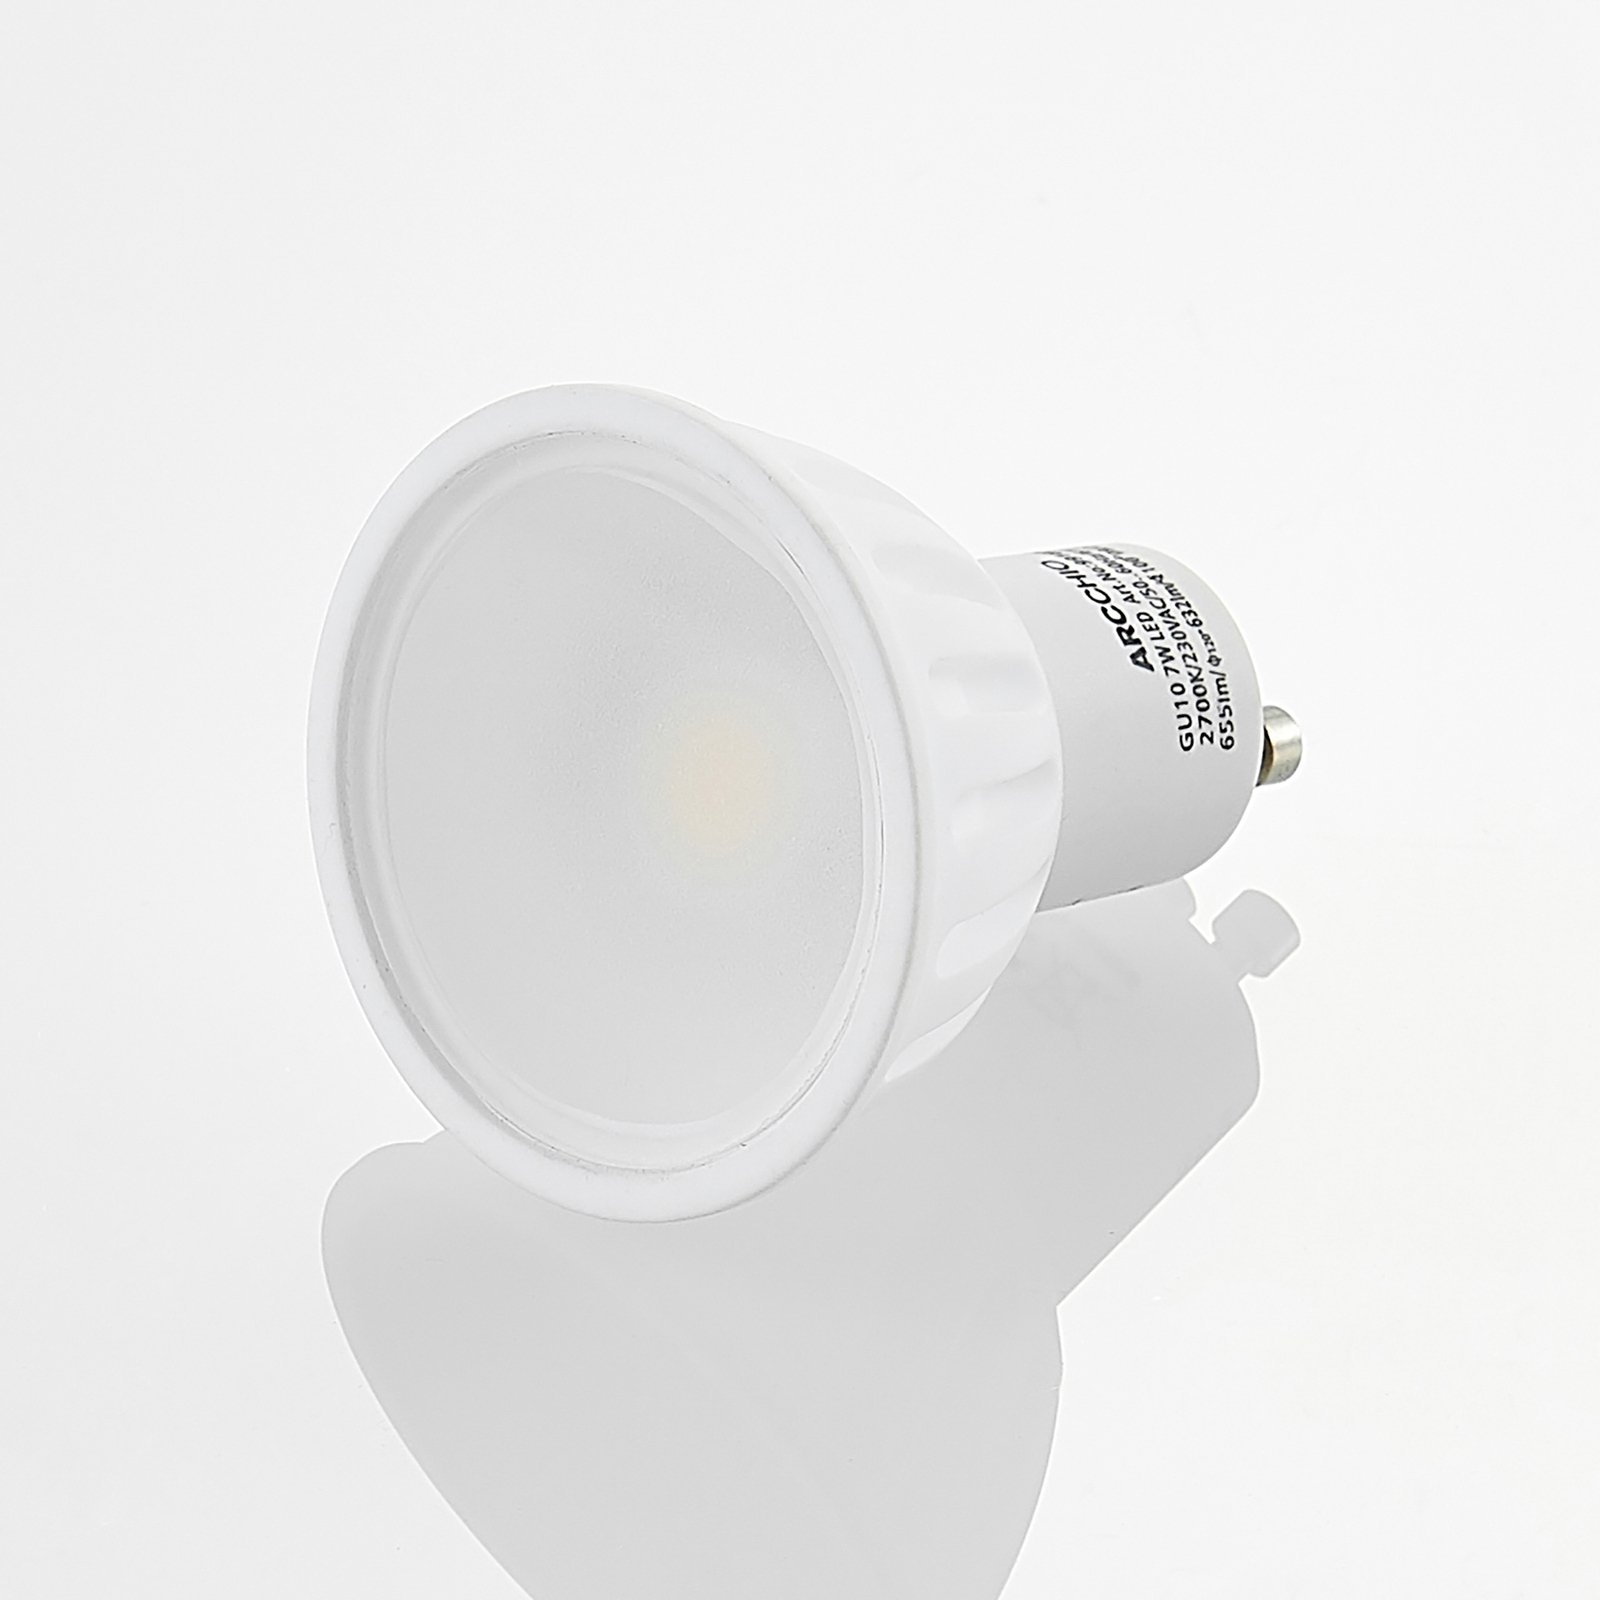 Arcchio LED reflector GU10 100° 7W 2 per set